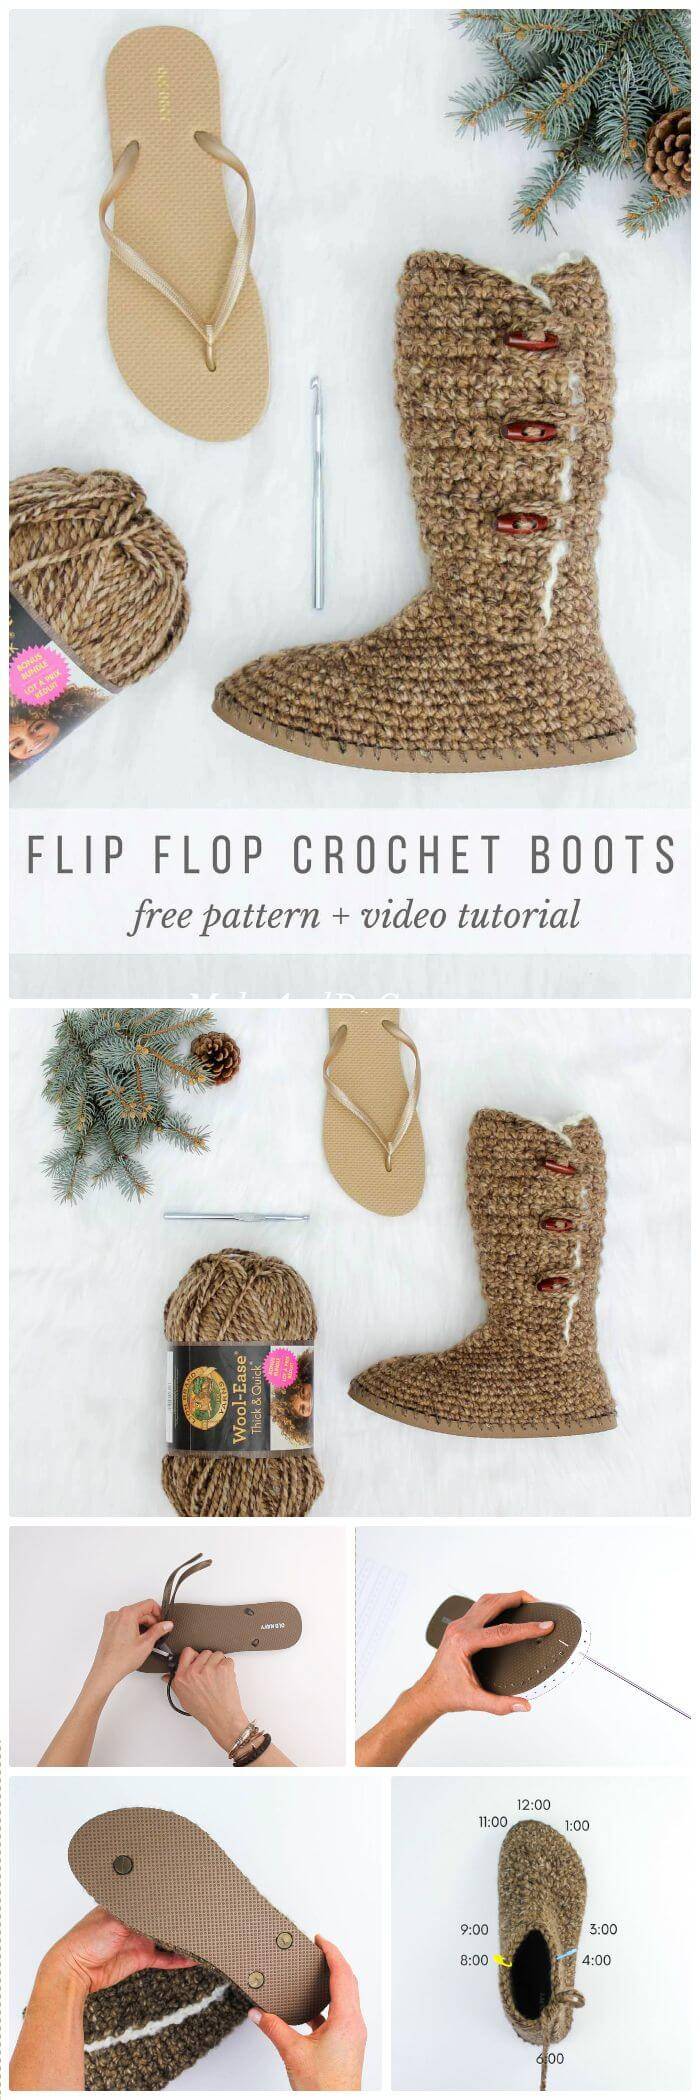 flip flop crochet boots